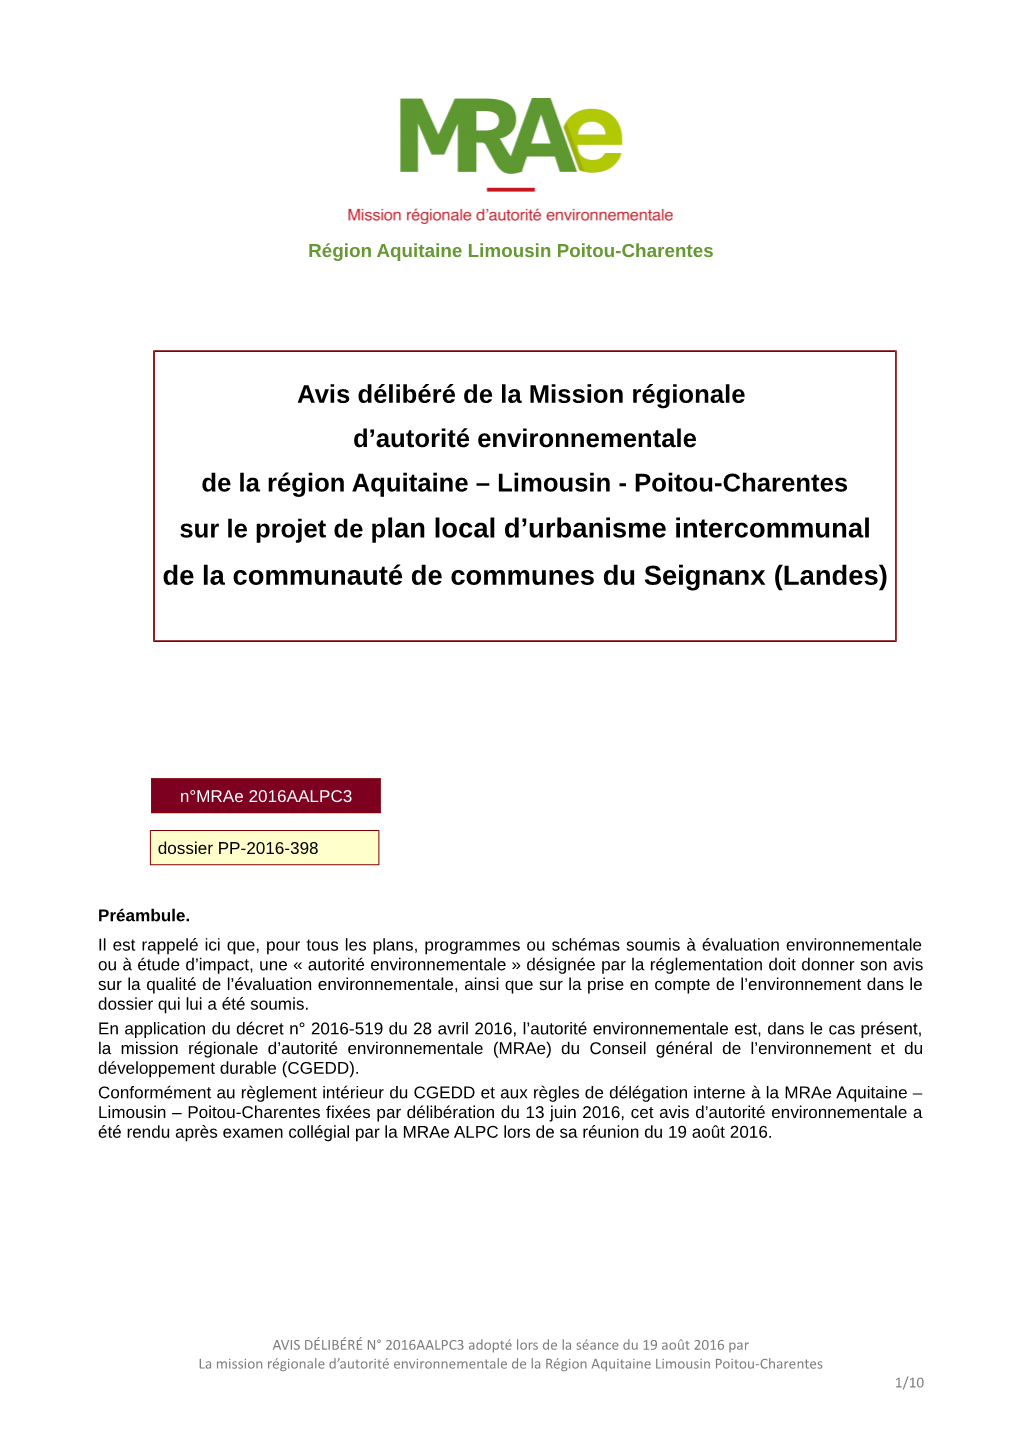 Sur Le Projet De Plan Local D'urbanisme Intercommunal De La Communauté De Communes Du Seignanx (Landes)